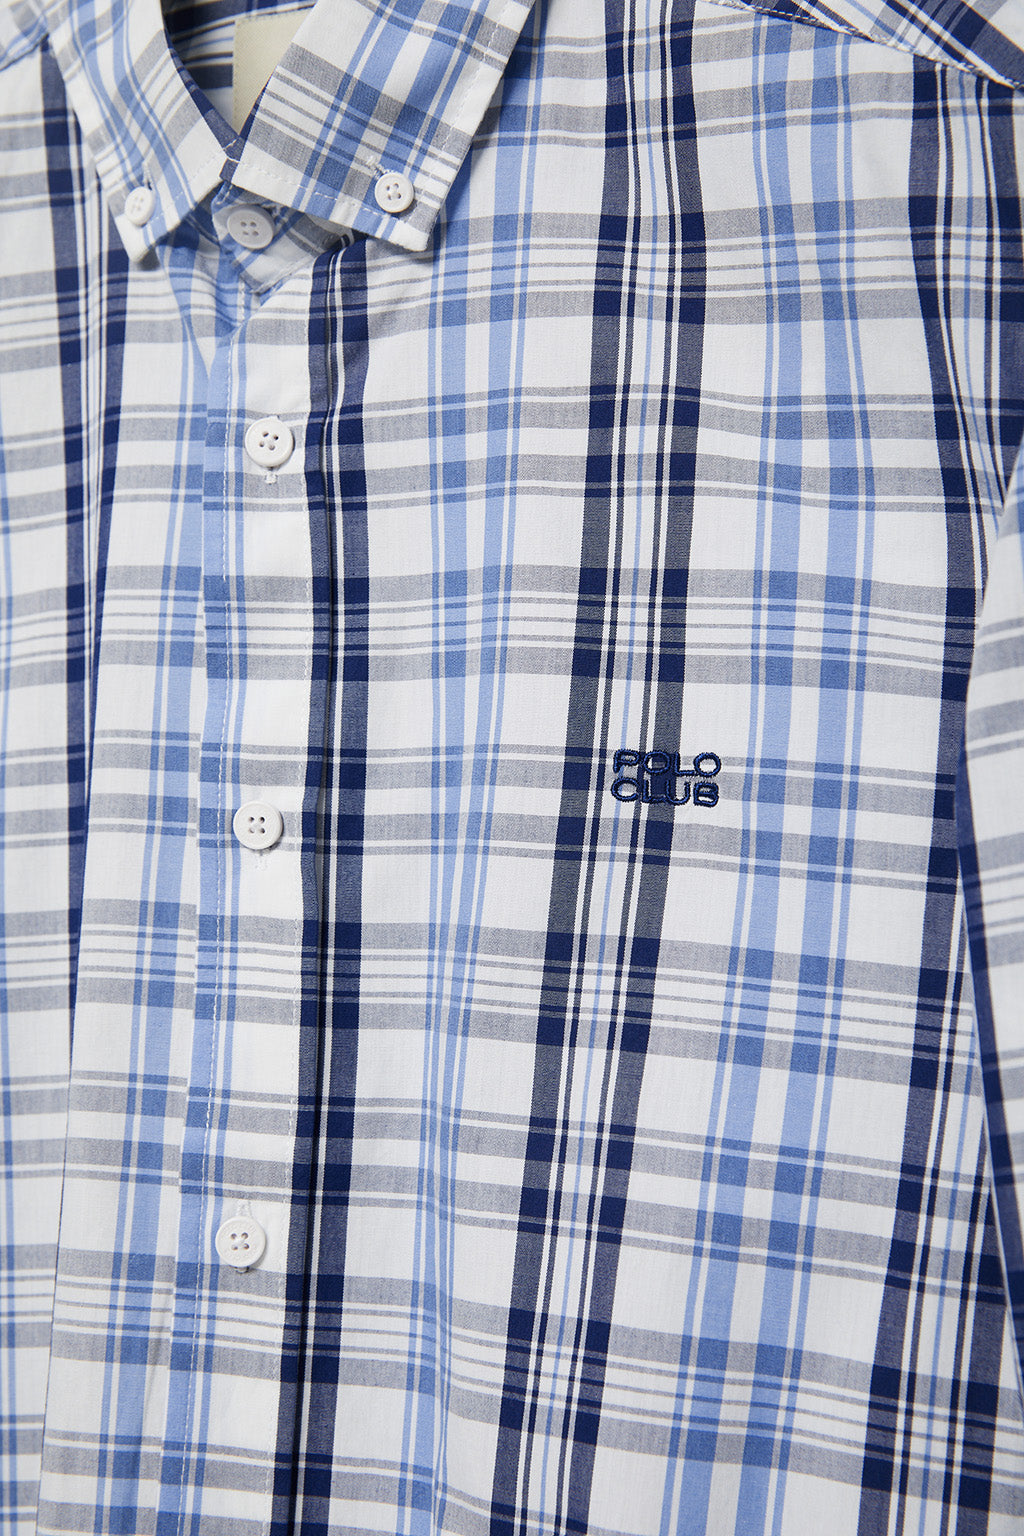 Camisa en tonos azules y blanco con logo bordado – Club